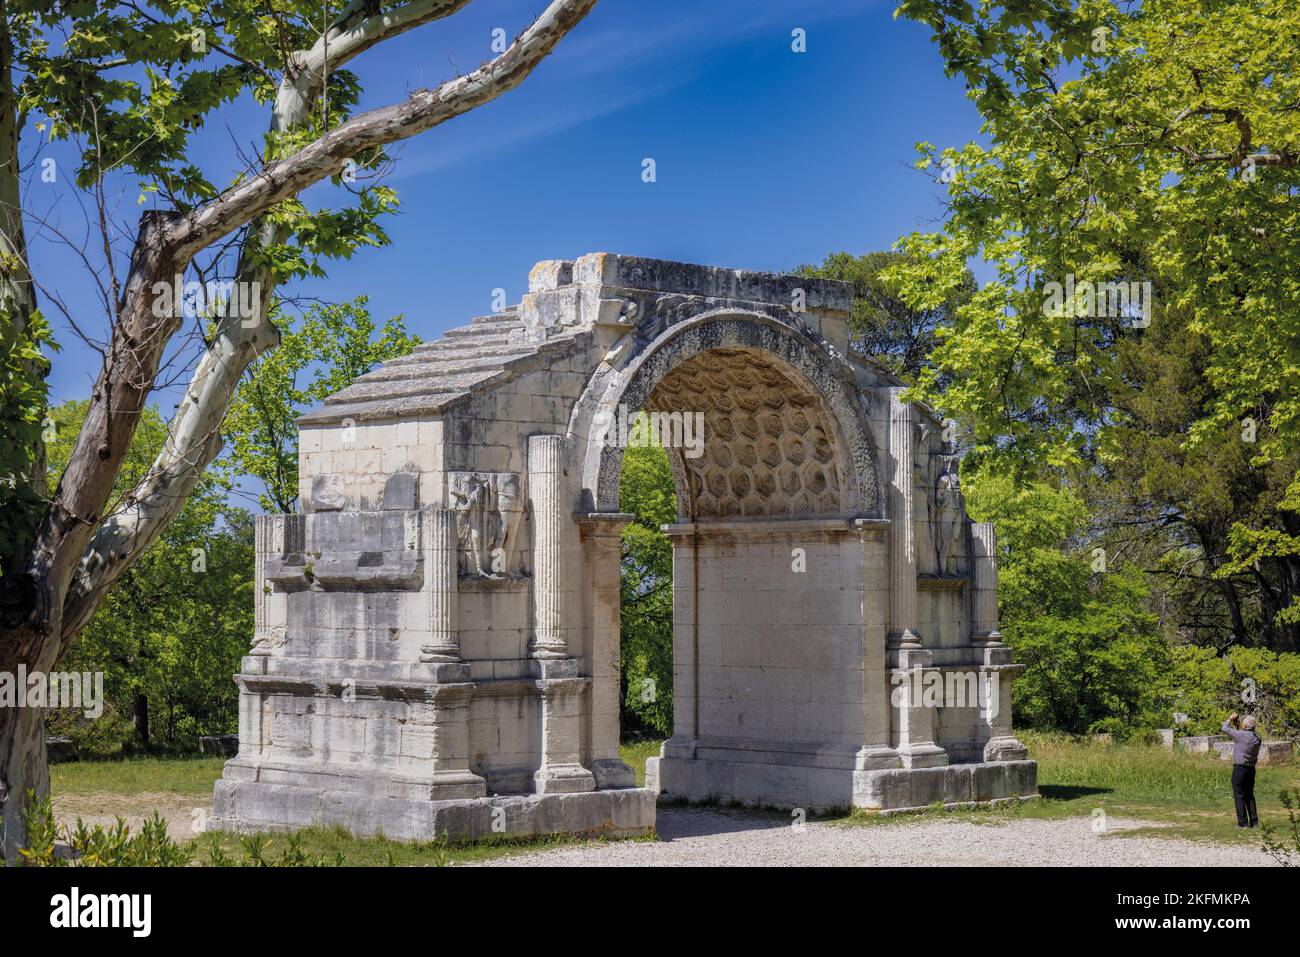 Saint-Rémy-de-Provence, Bouches-du-Rhône, Provence, France. L'Arc Municipal, une arche triomphale qui fut l'entrée de la ville romaine de Glanum. Banque D'Images